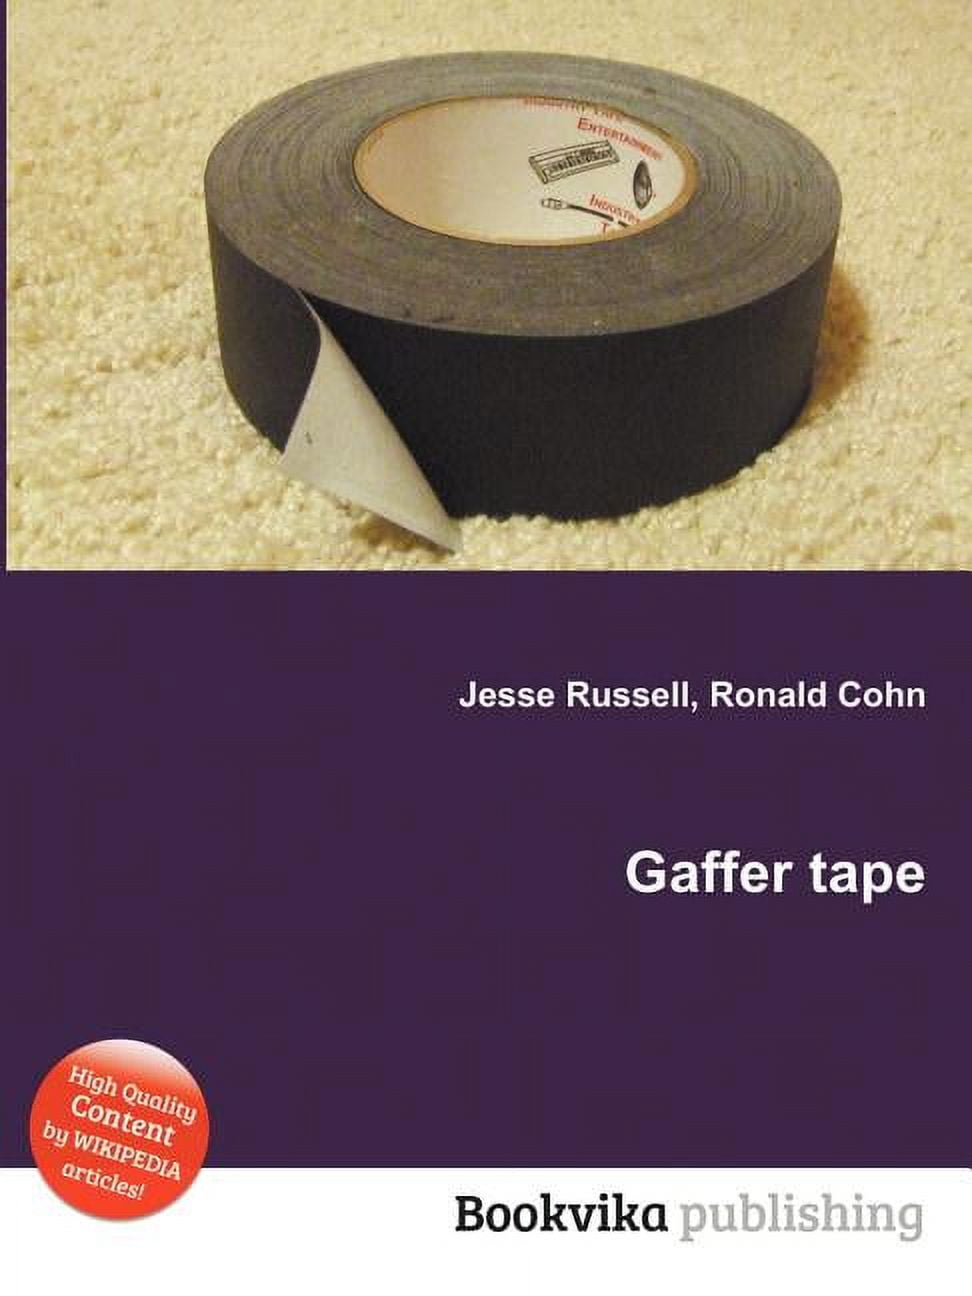 Gaffer tape - Wikipedia